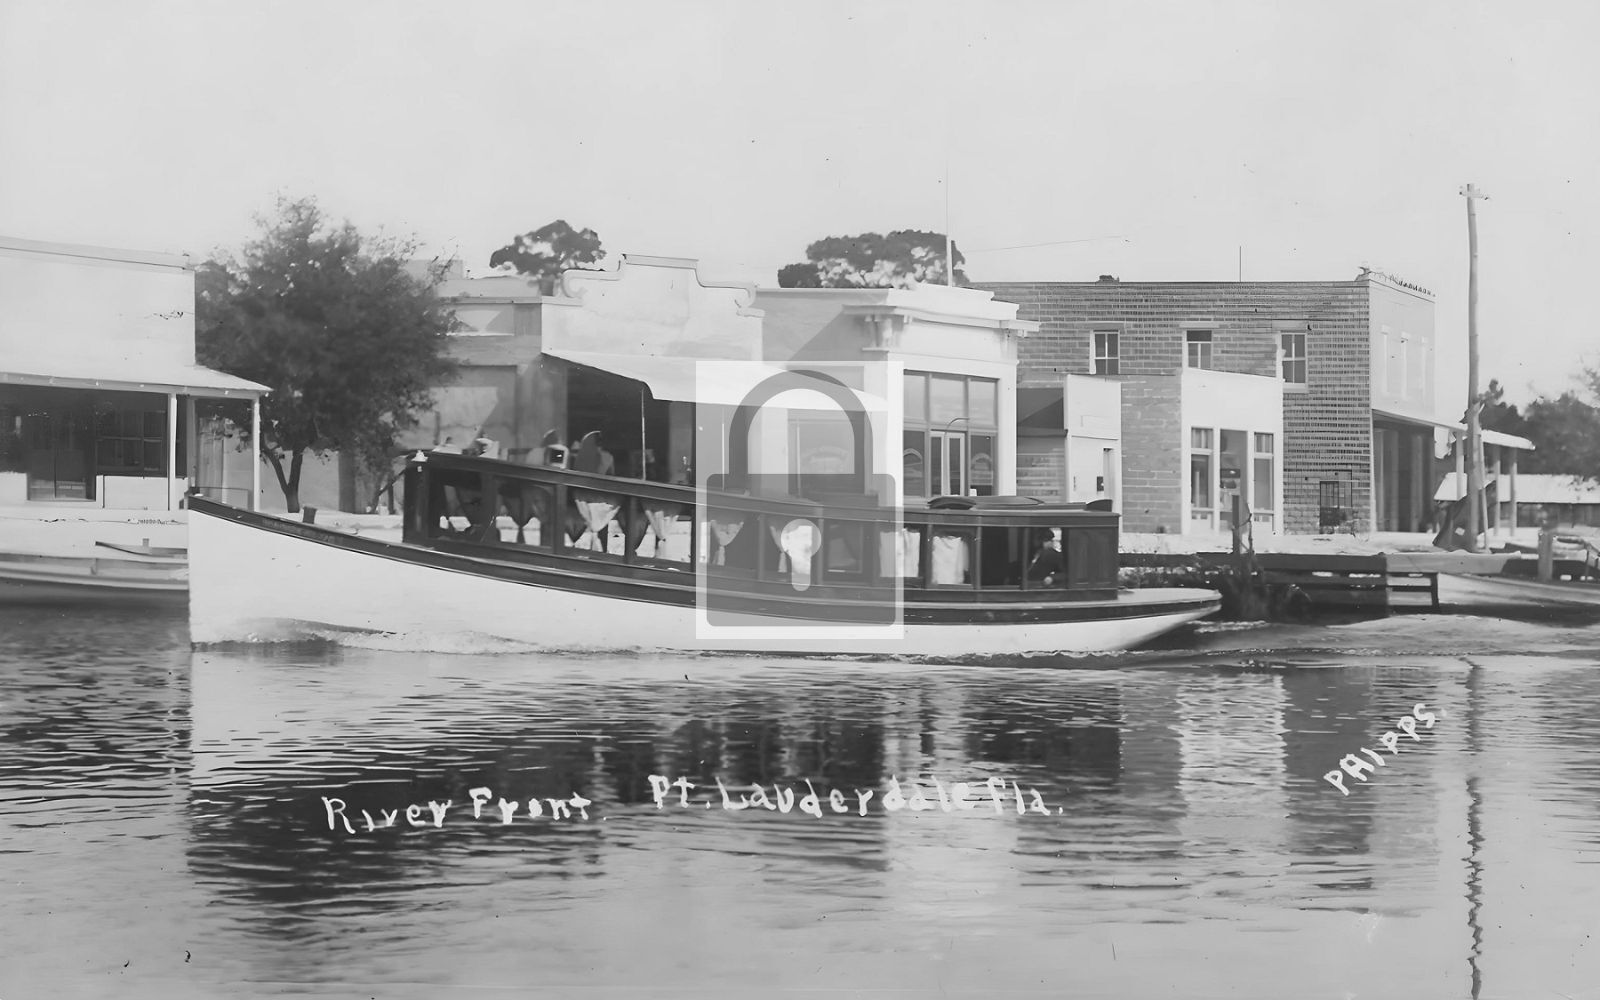 River Front Boat Ft Fort Lauderdale Florida FL